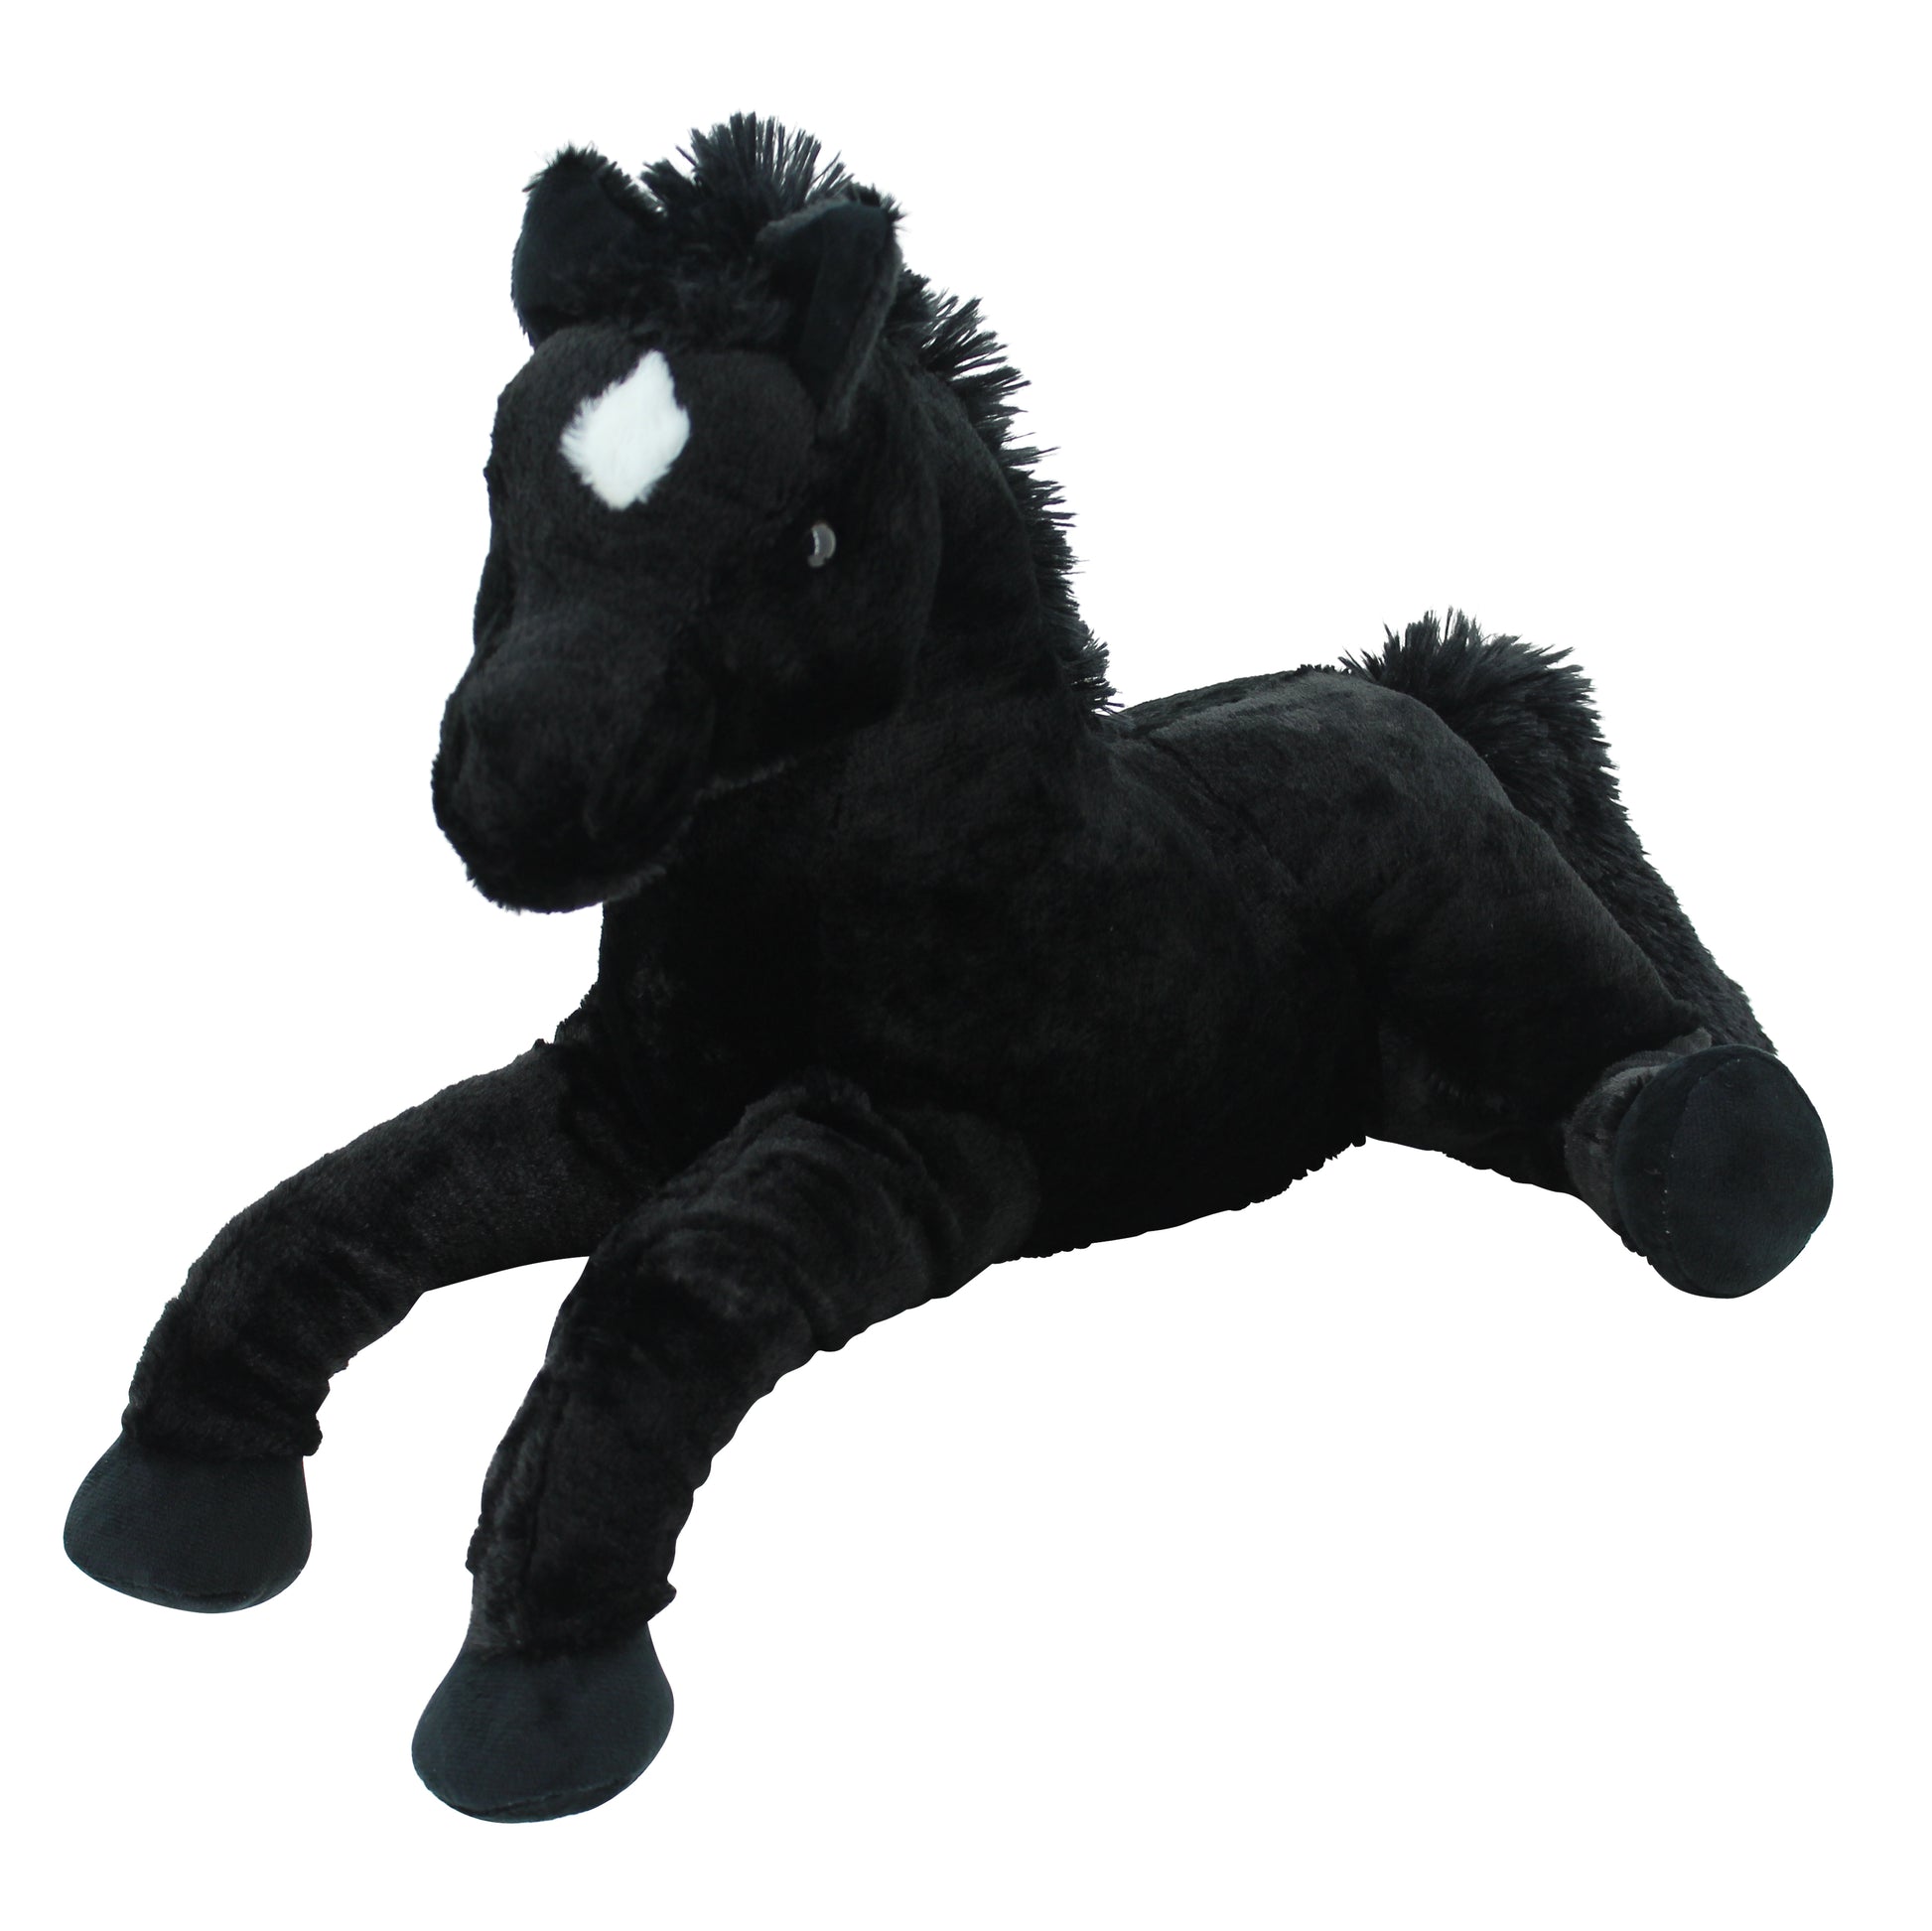 Sweety Toys 5185 peluche cavallo puledro nero peluche morbido cavallo